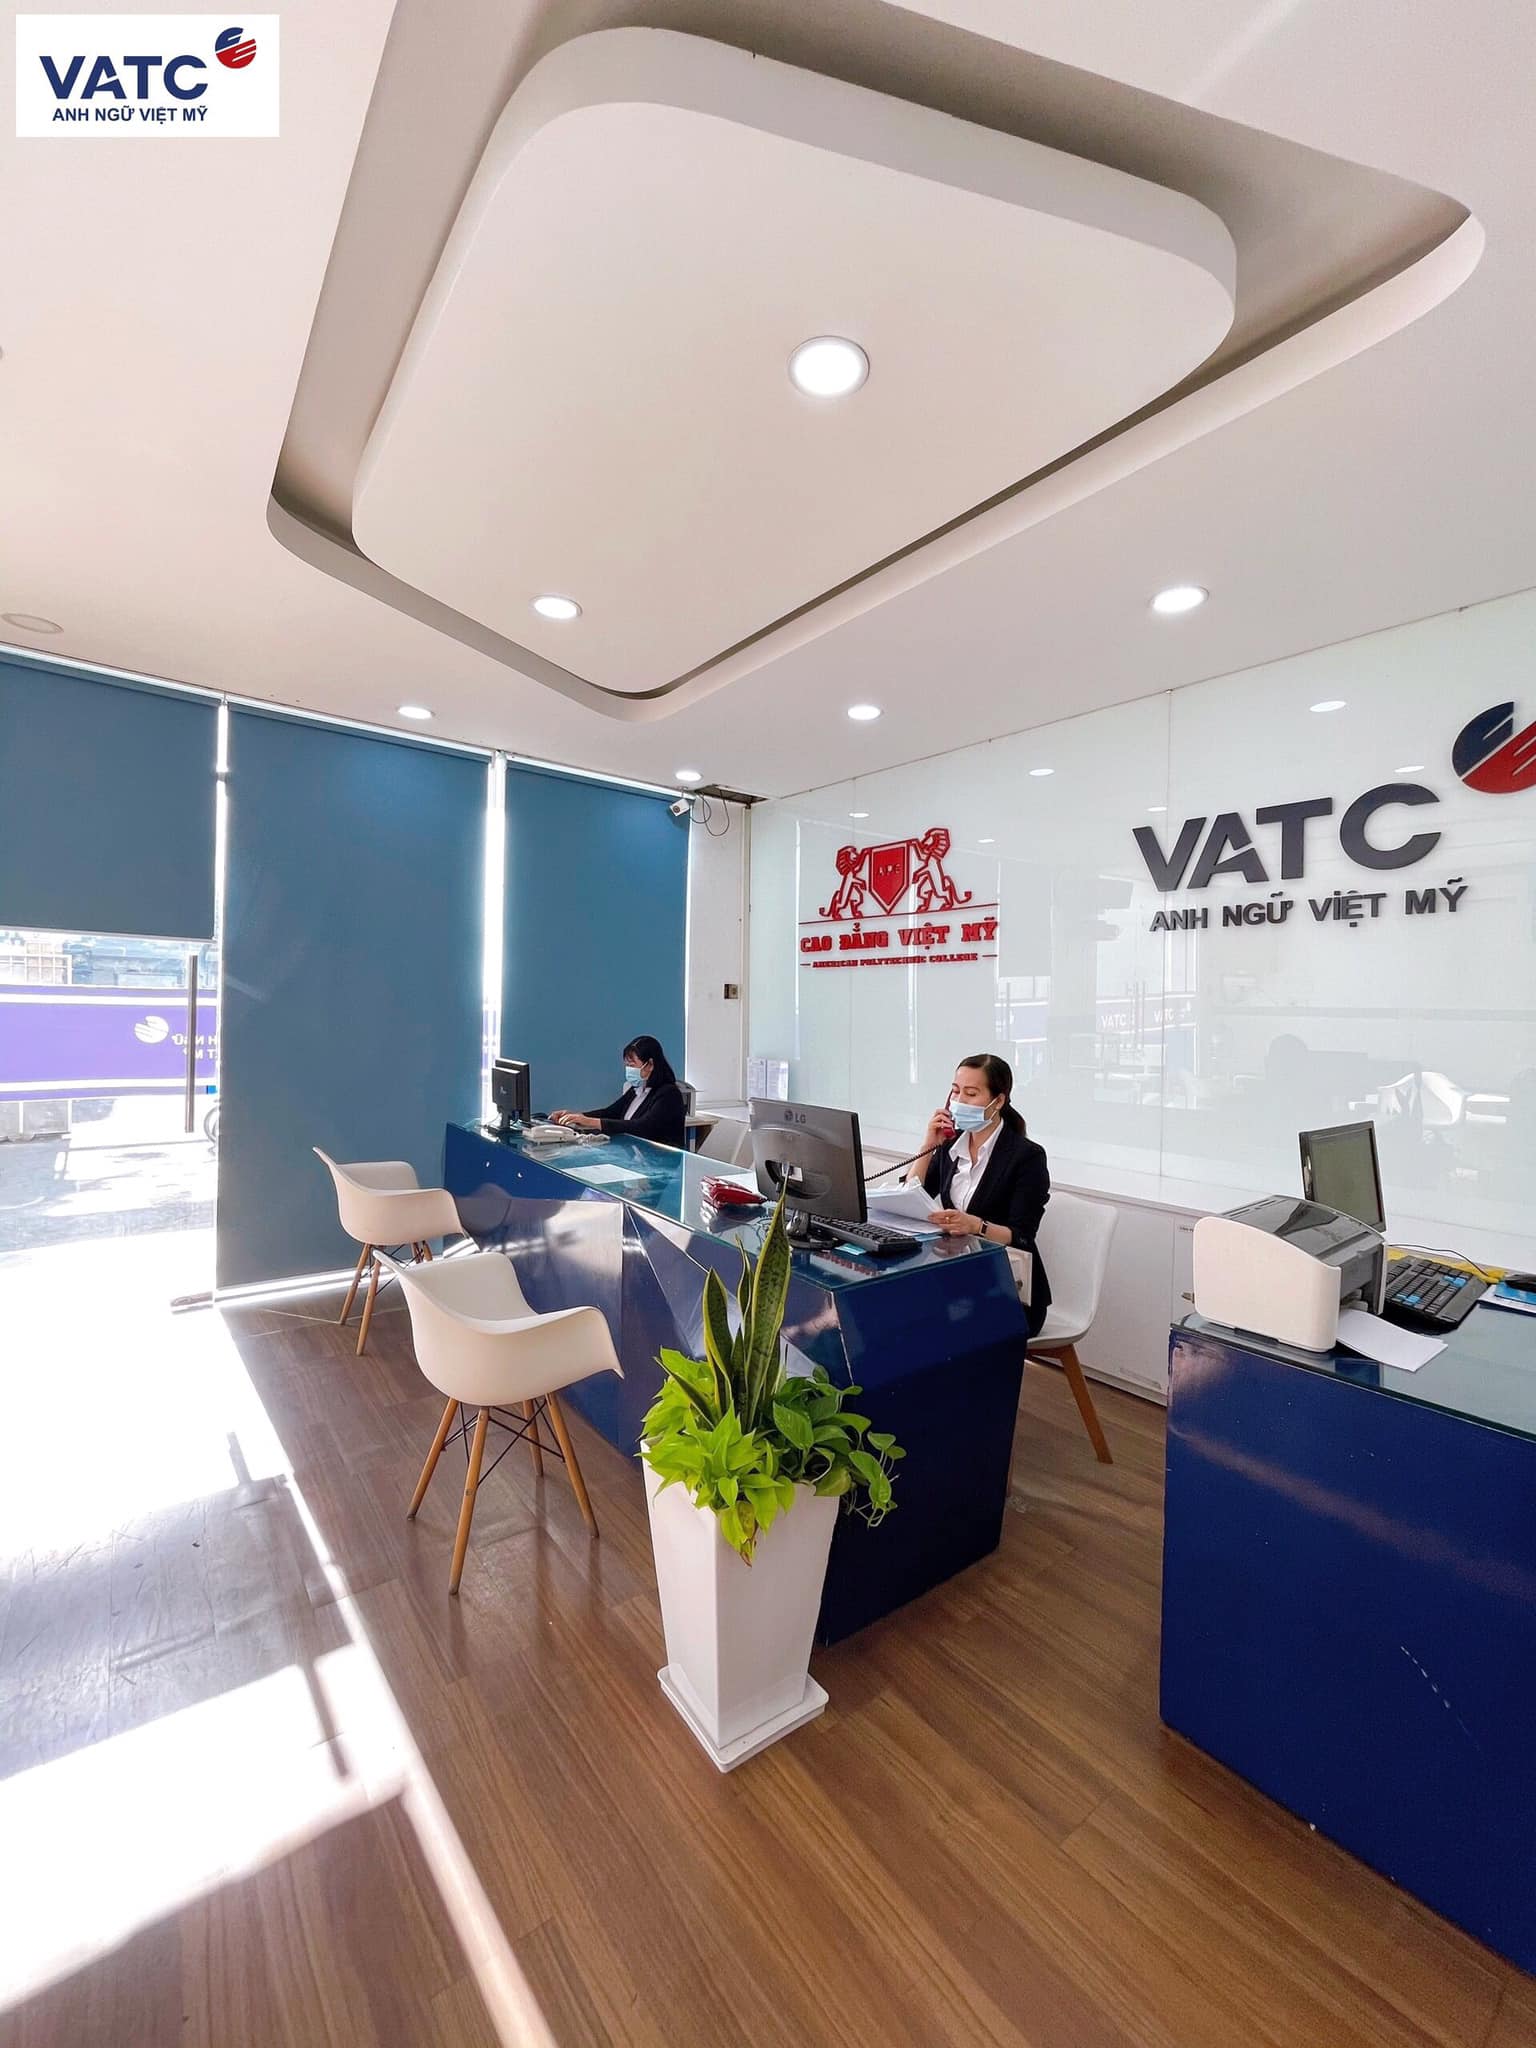 Top 8 trung tâm Anh ngữ tốt nhất tại Cần Thơ -  Anh Ngữ Việt Mỹ VATC